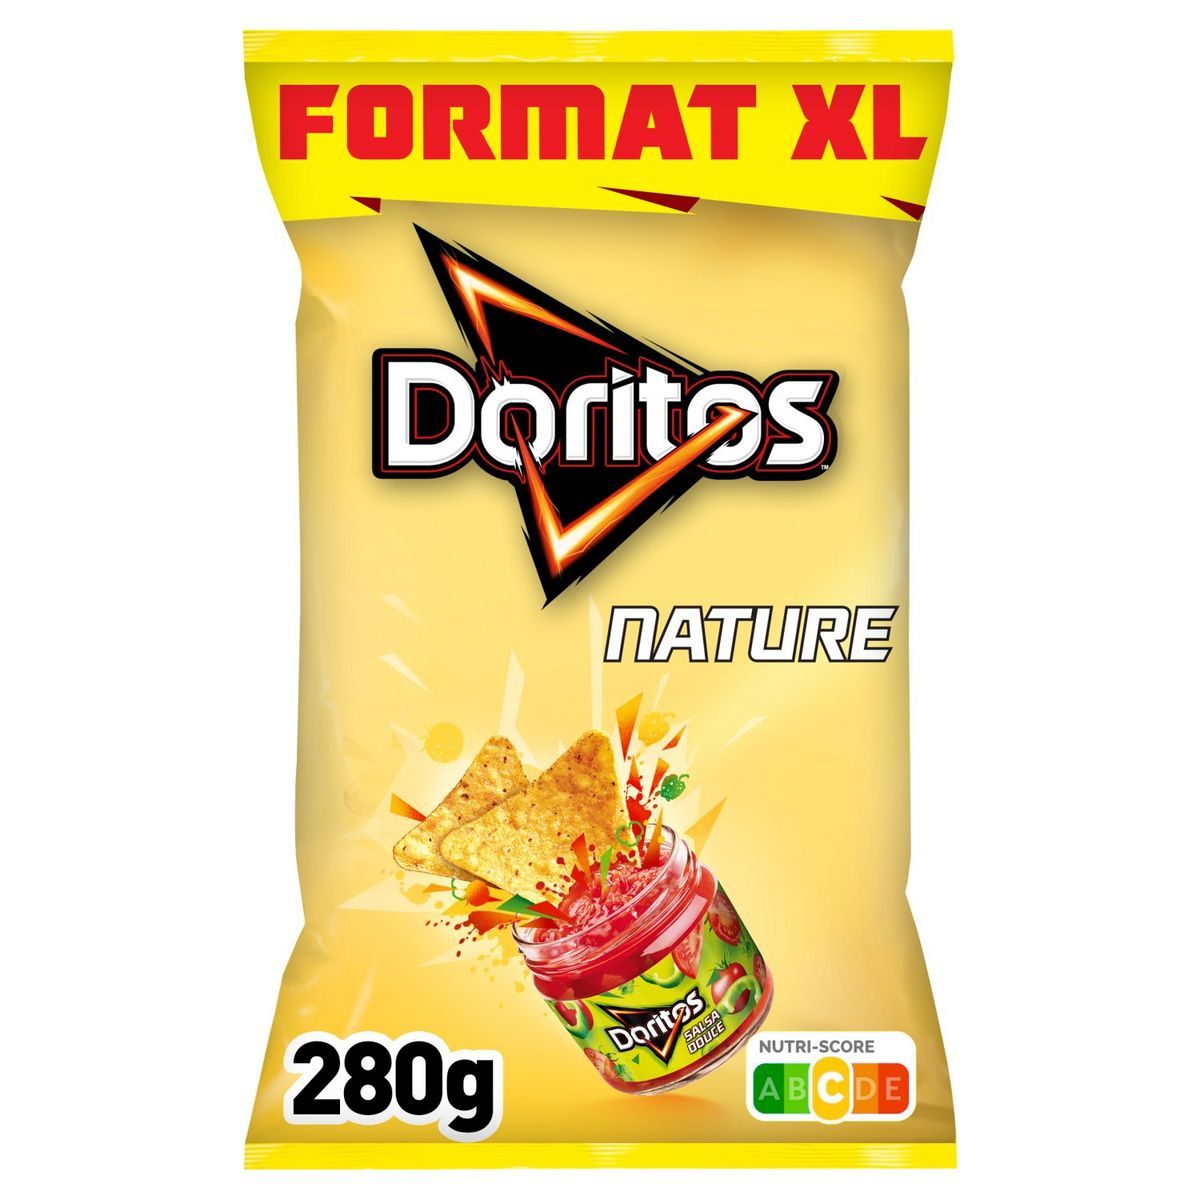 TORTILLA  NATURE  FORMAT XL  DORITOS